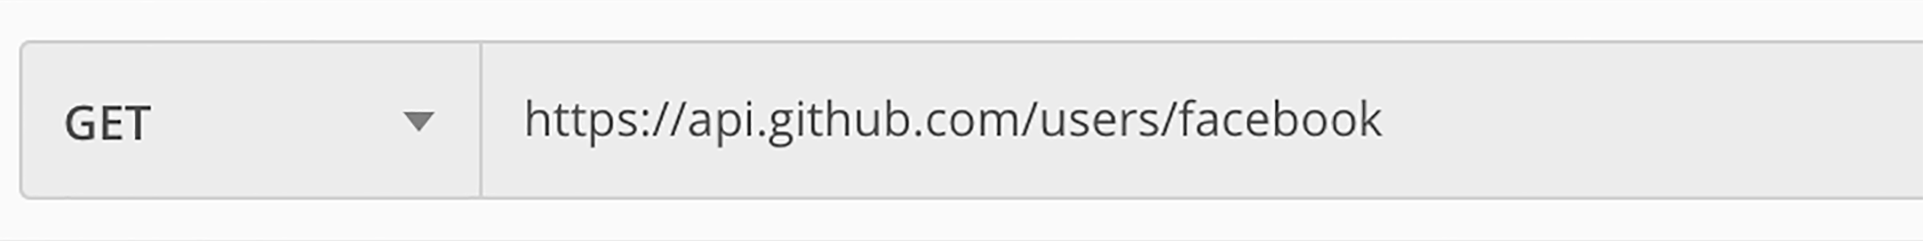 L’URL d’une requête complète comprend le nom de domaine : api.github.com, et l'URI (le chemin de la ressource) : /users/faceboook